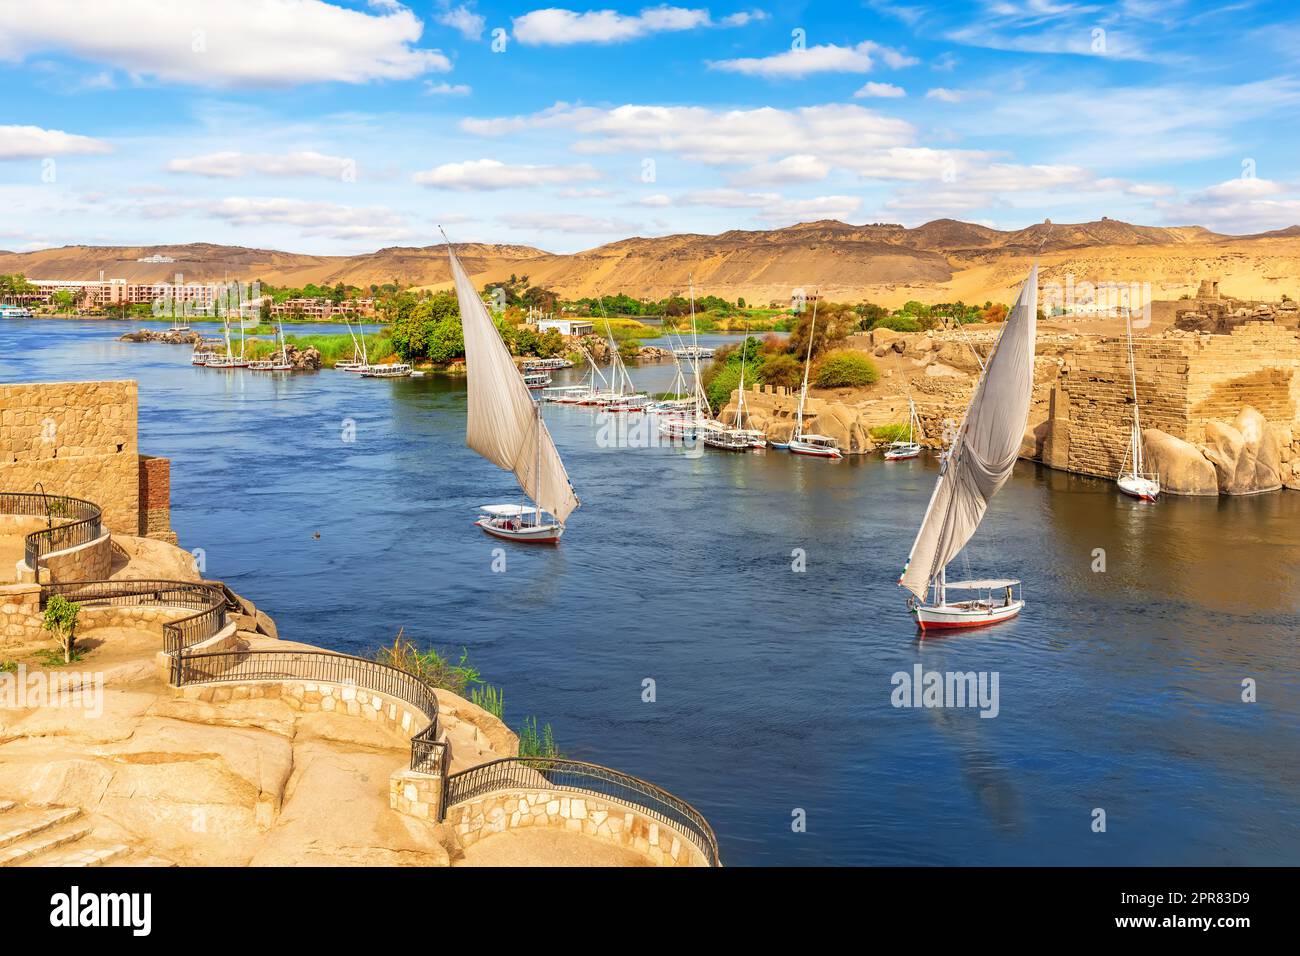 Le paysage du Nil et les voiliers traditionnels, Assouan, Egypte Banque D'Images